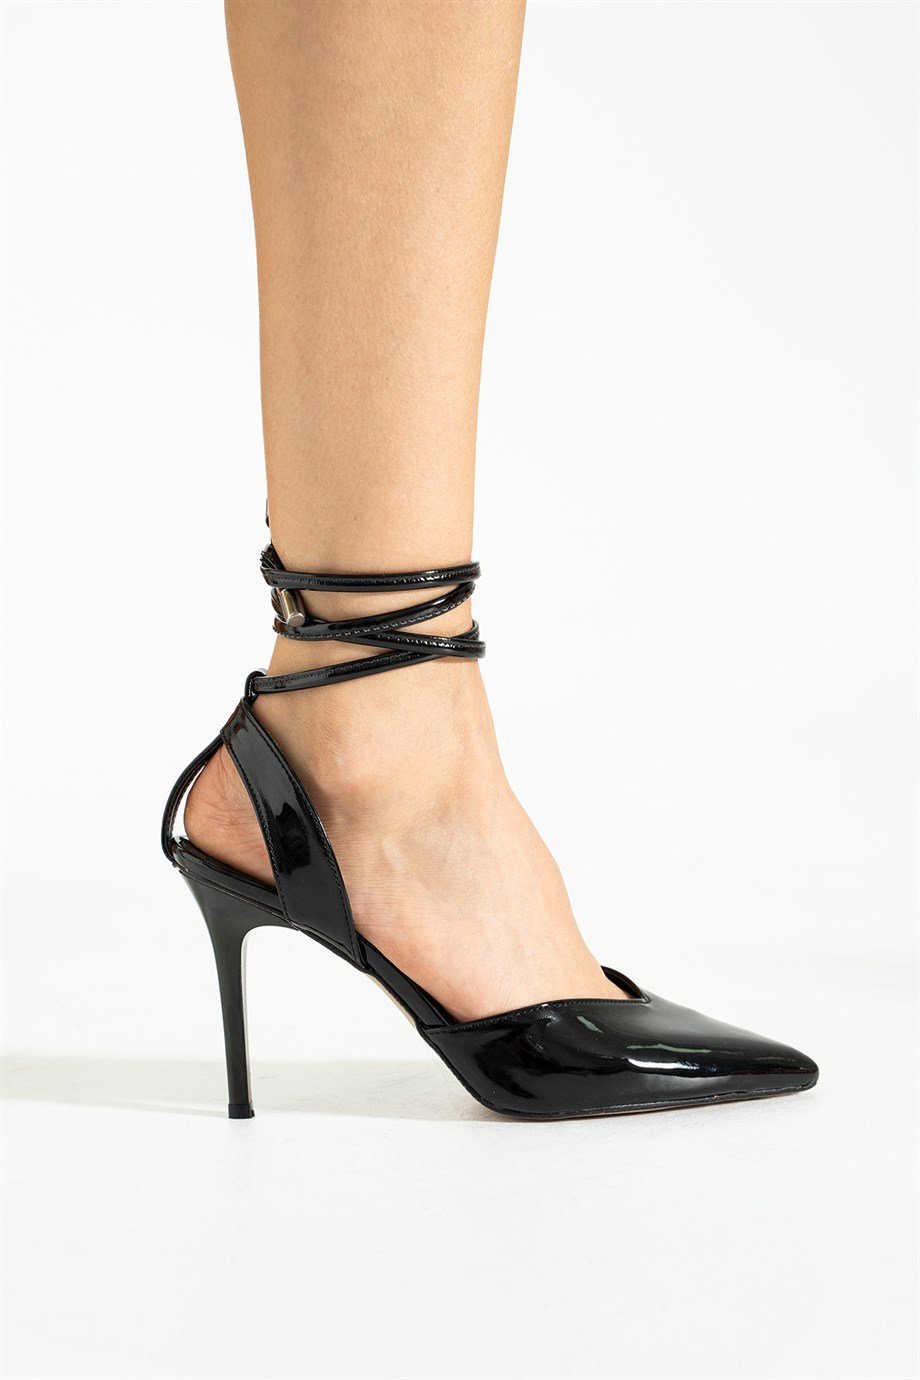 Pazzyonez PLAİNESS Siyah Rugan Bilekten Bağlamalı Kadın Topuklu Ayakkabı